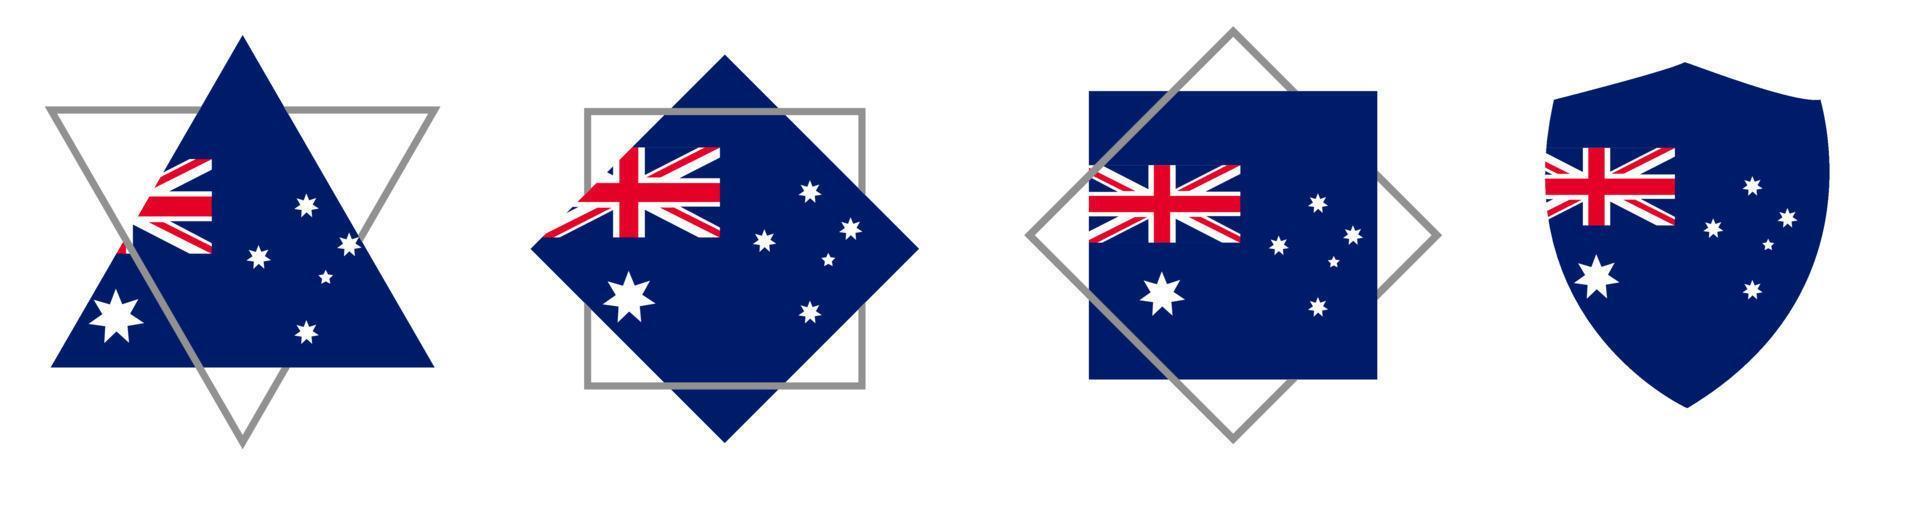 vecteur de drapeau australien, ensemble d'illustrations vectorielles.